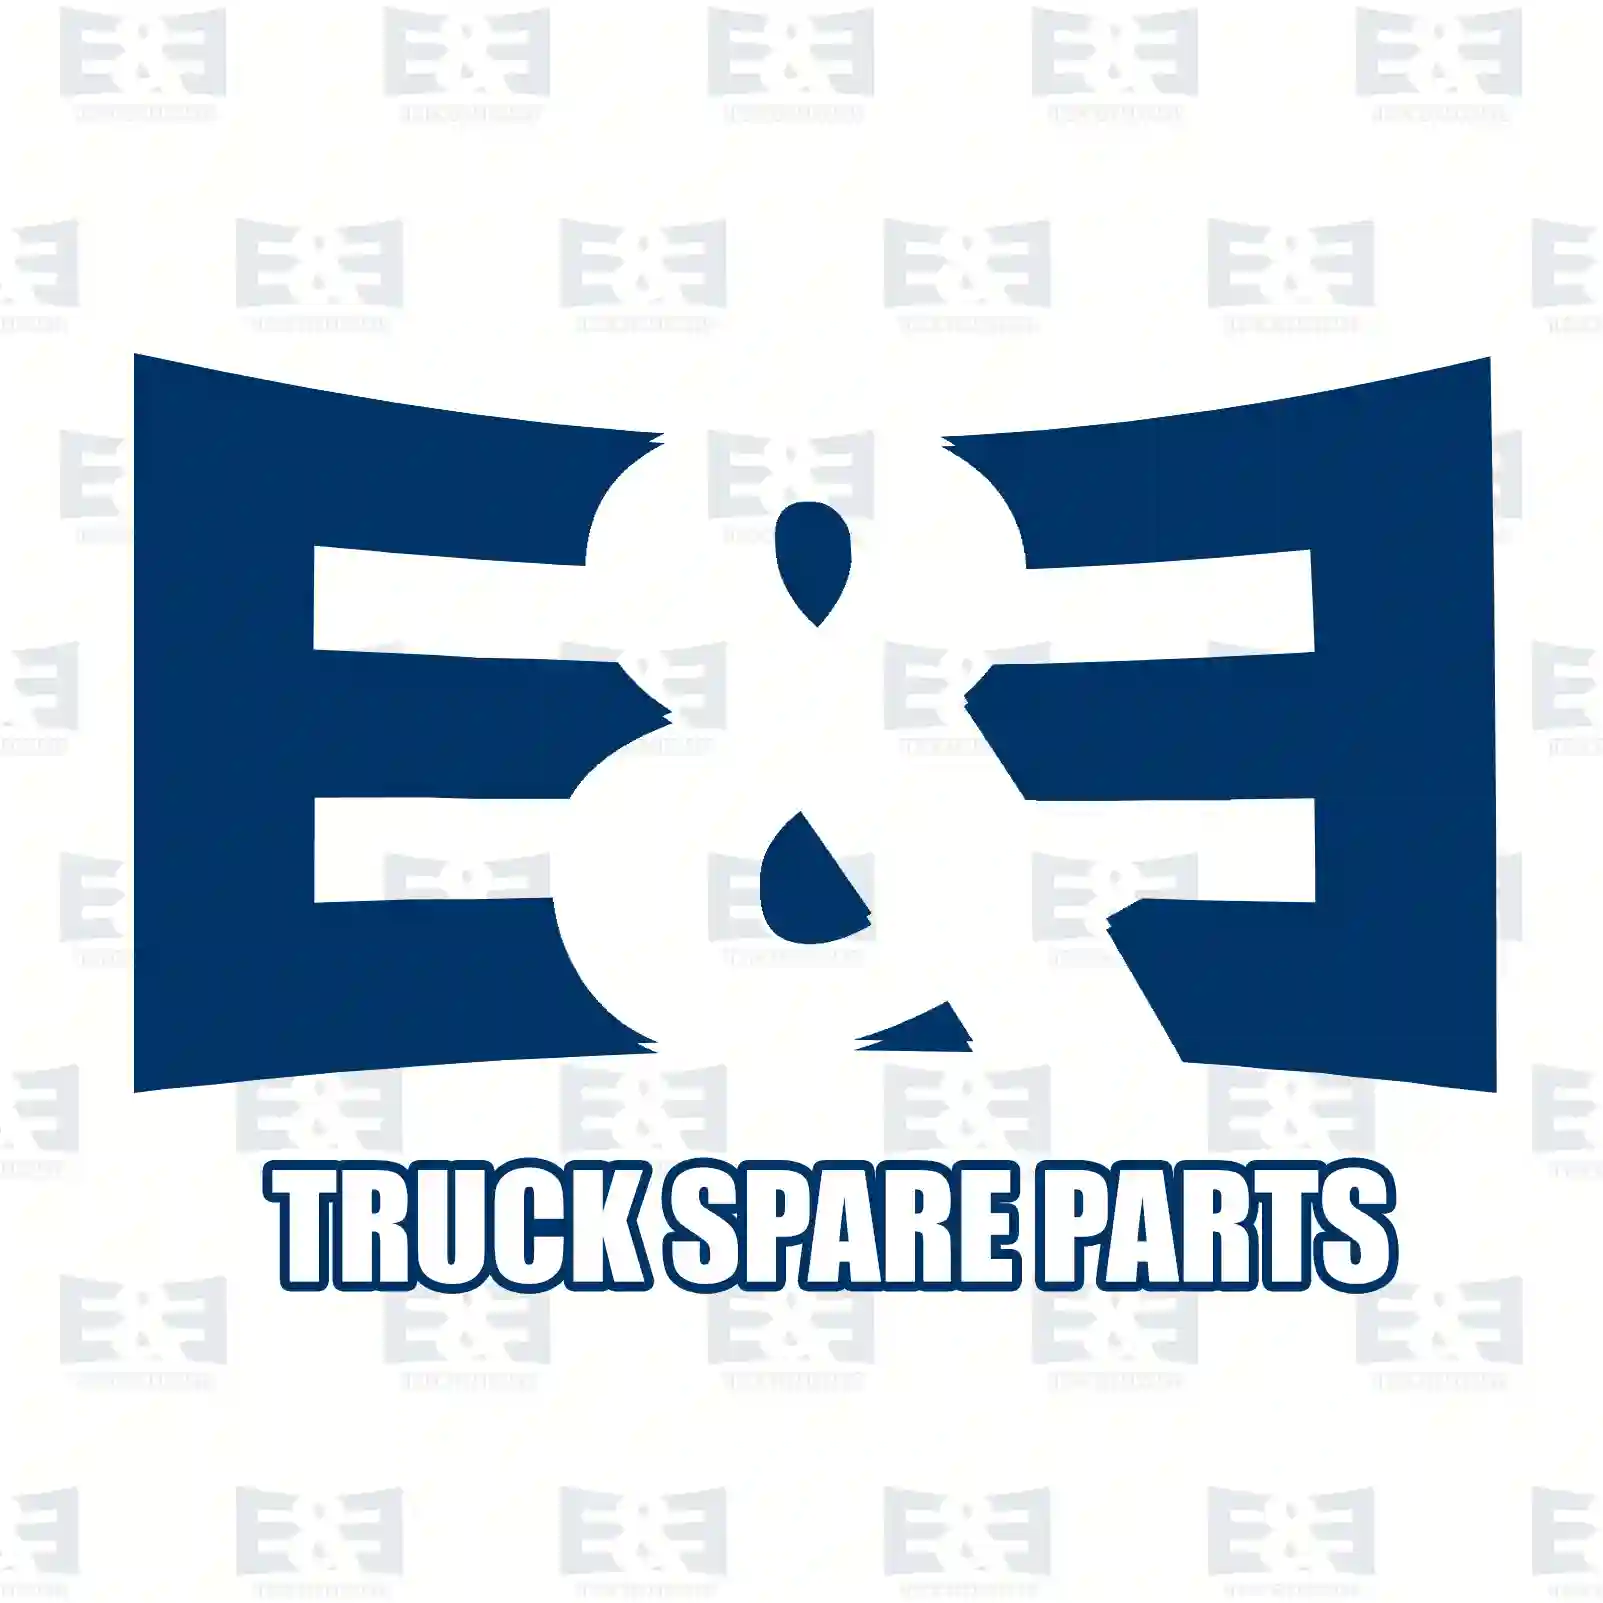 Wiper arm, 2E2293156, 81264306042, N1011026833 ||  2E2293156 E&E Truck Spare Parts | Truck Spare Parts, Auotomotive Spare Parts Wiper arm, 2E2293156, 81264306042, N1011026833 ||  2E2293156 E&E Truck Spare Parts | Truck Spare Parts, Auotomotive Spare Parts